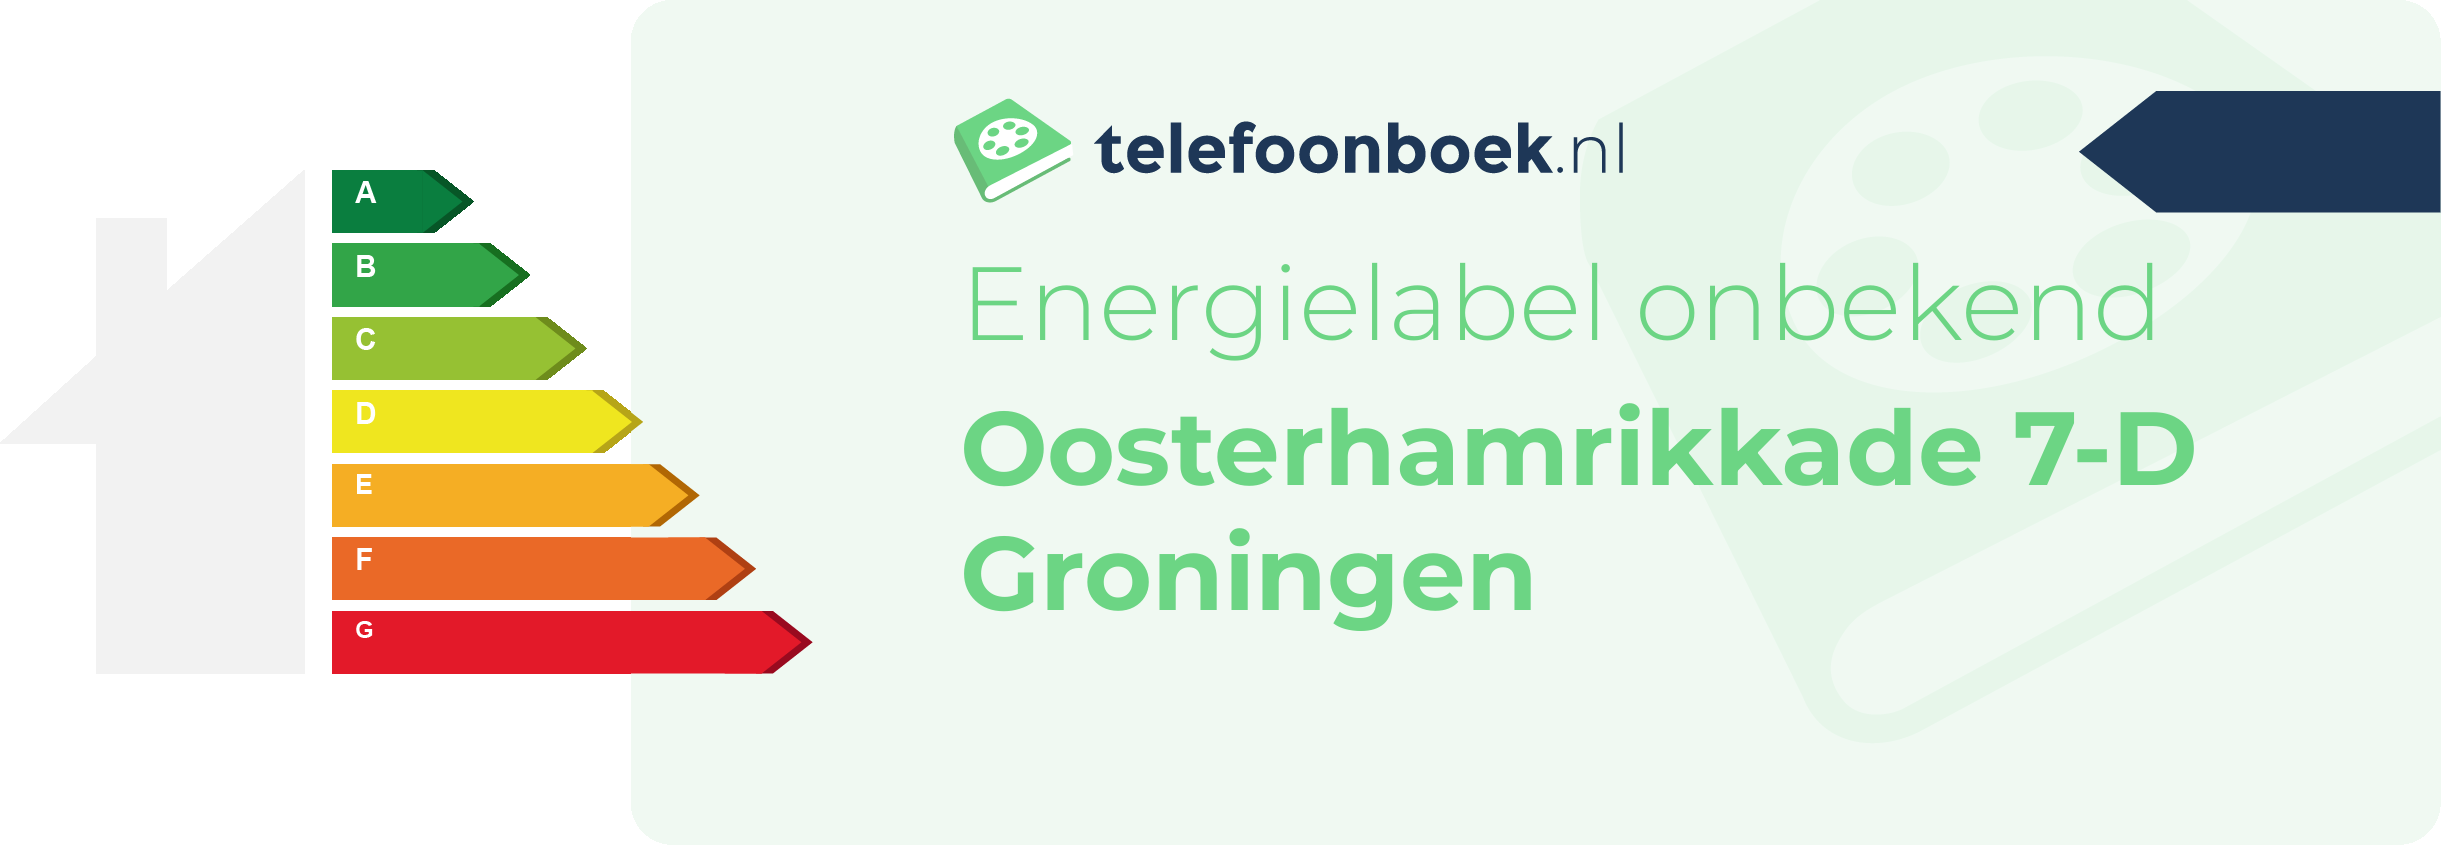 Energielabel Oosterhamrikkade 7-D Groningen